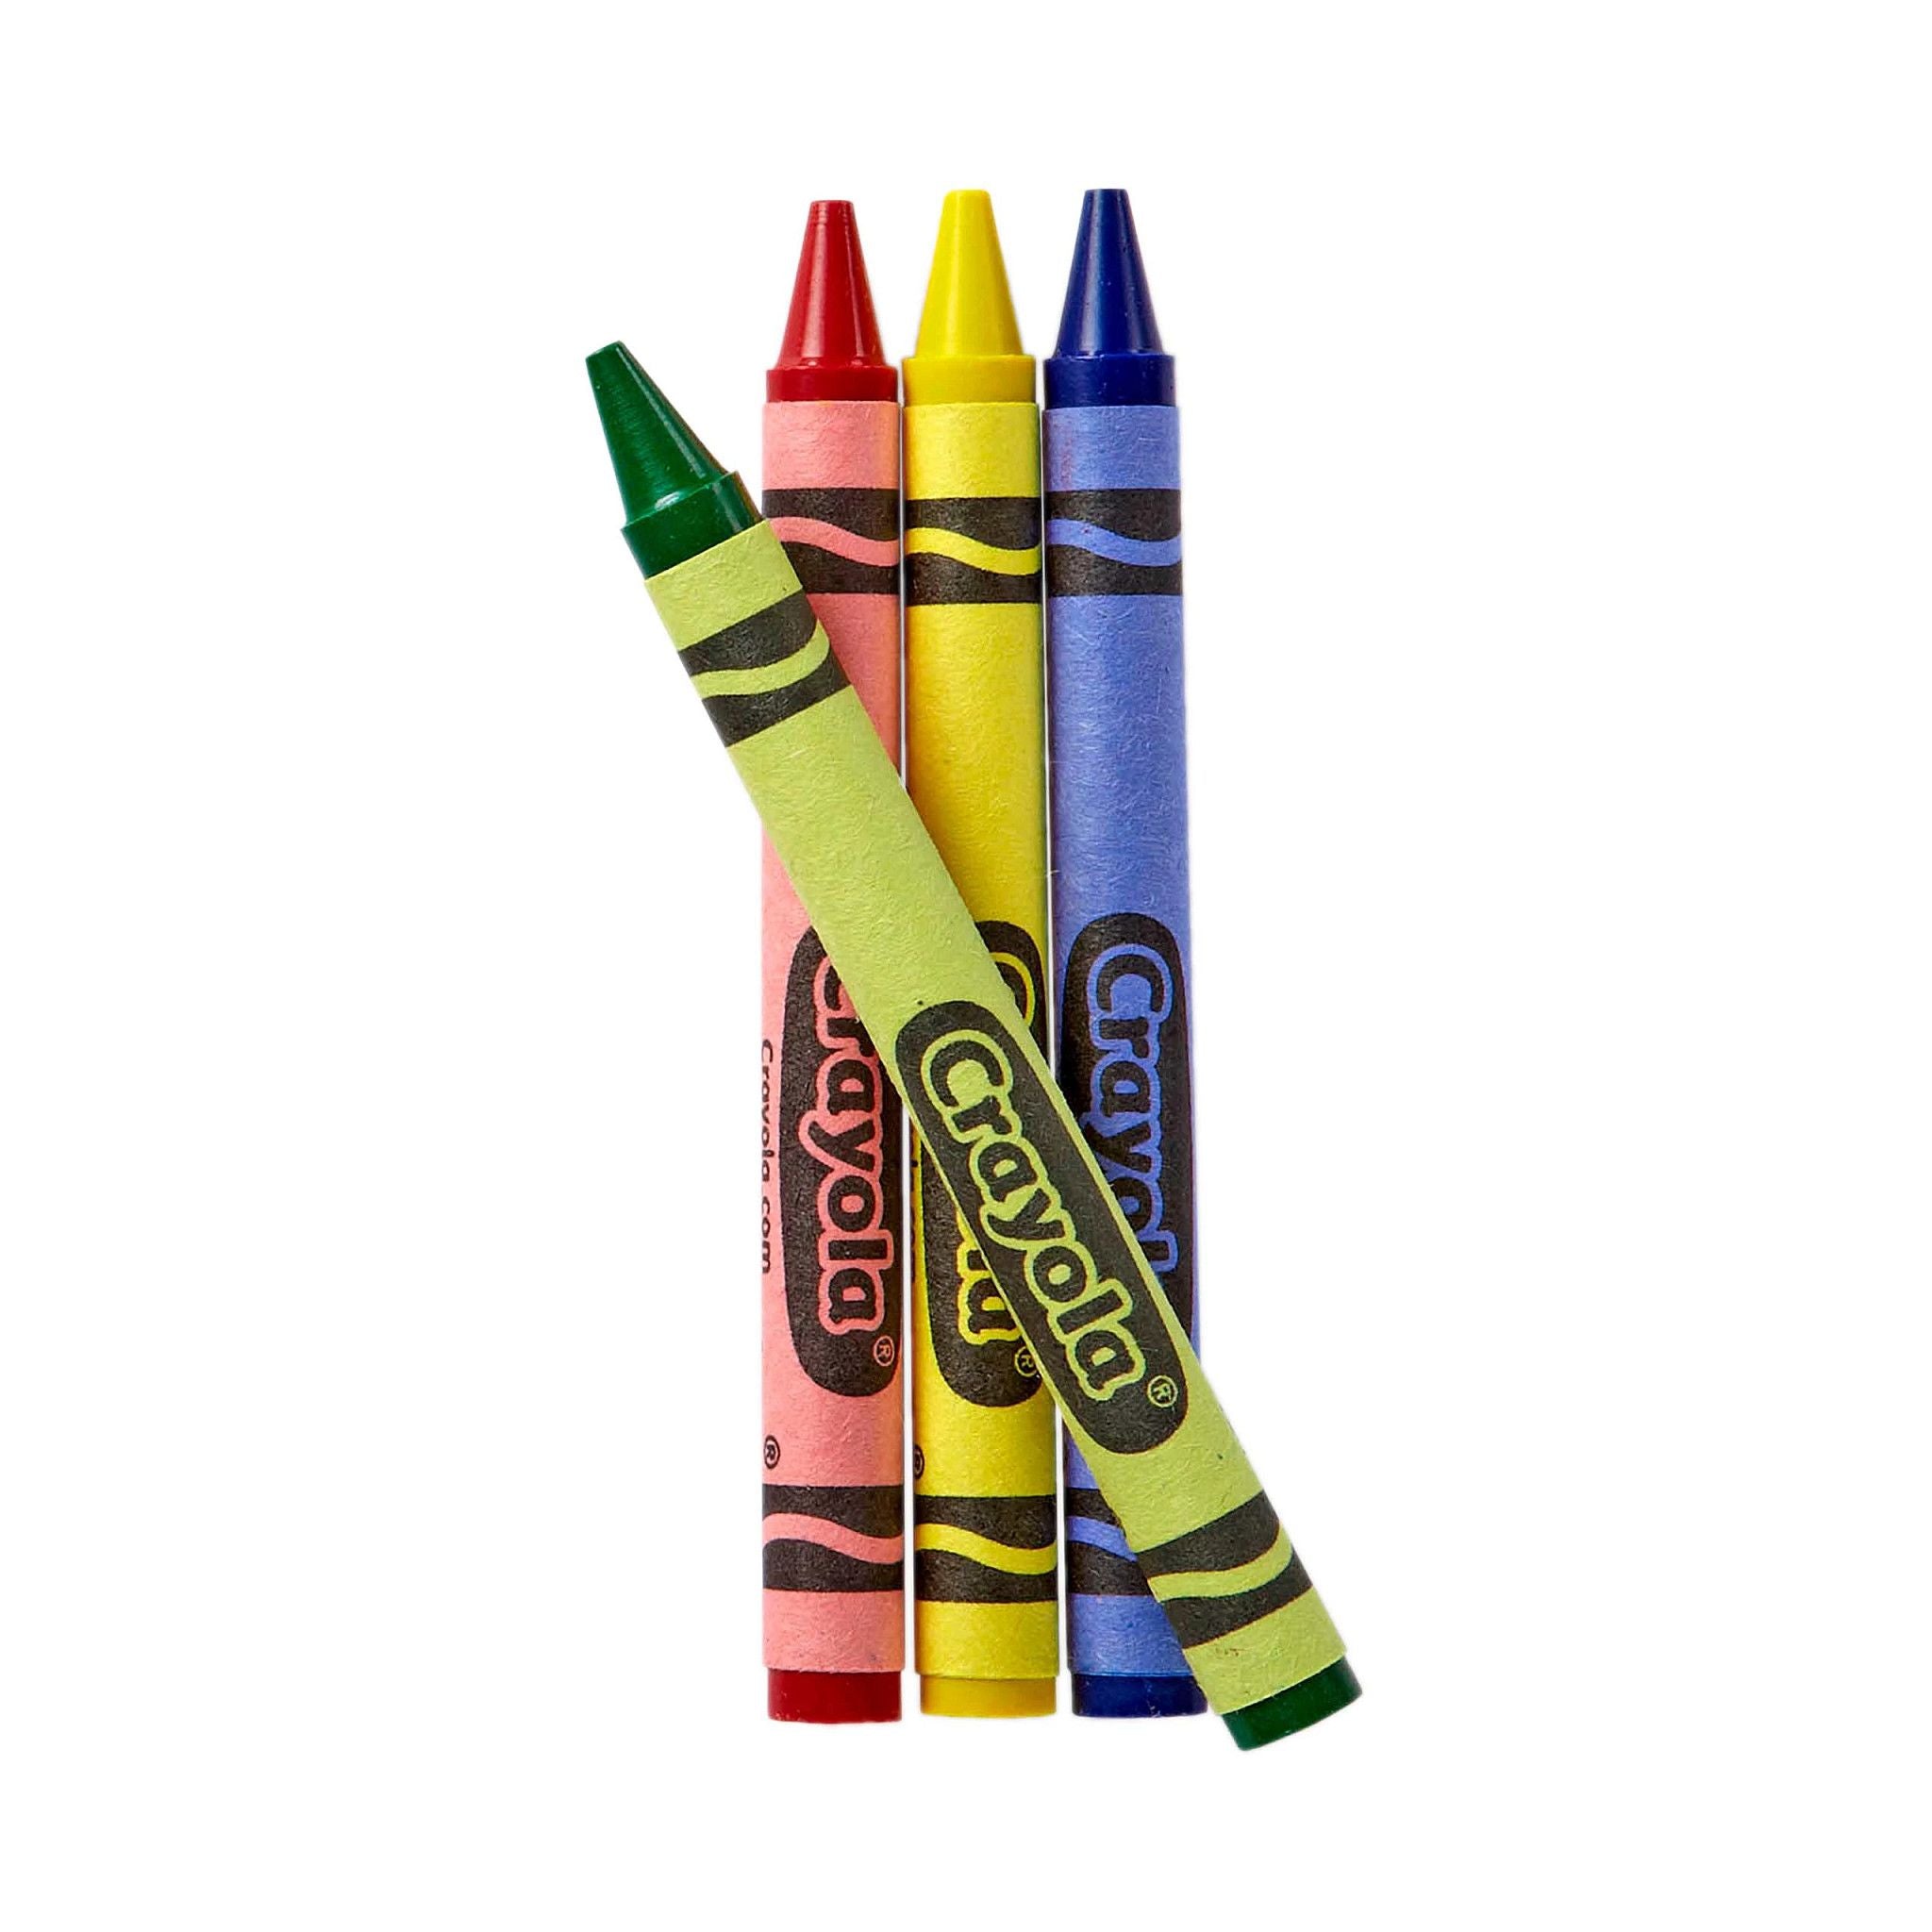 Crayon 3D Cylindrique : 4 Coloris Disponible.